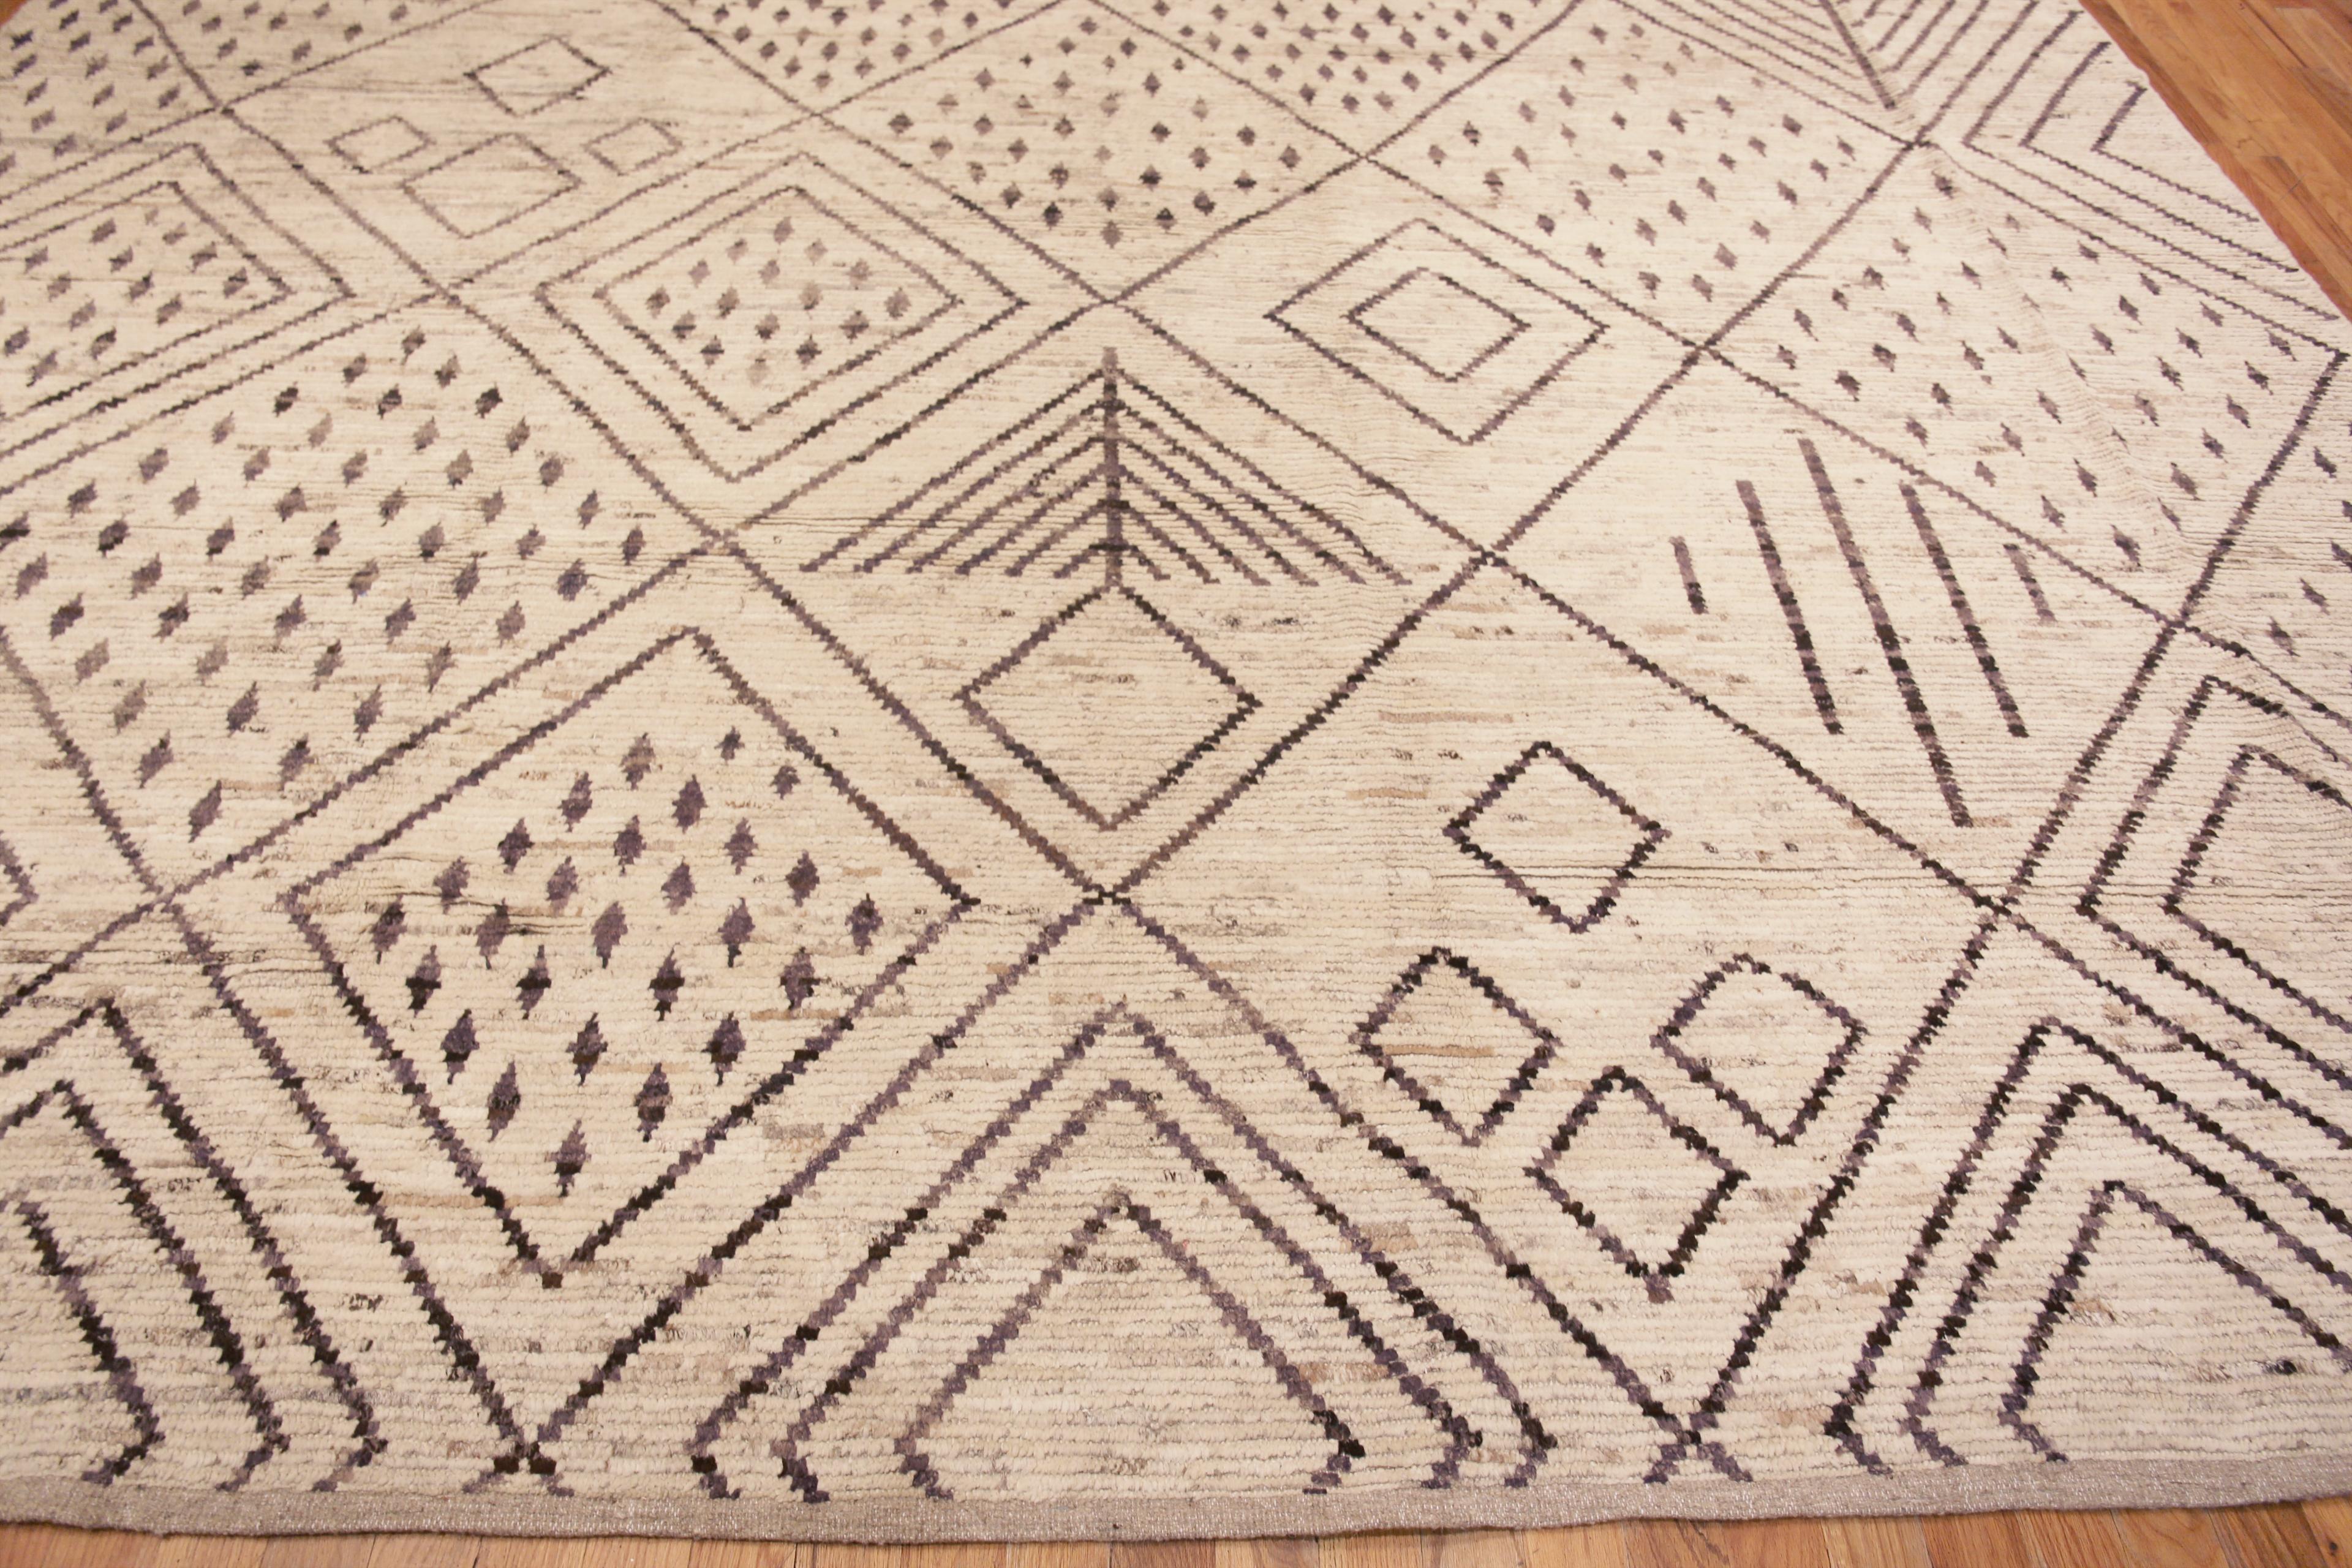 Nazmiyal Kollektion Stammeskunst Marokkanischer Berber Bani Ourain Design Teppich 12'4